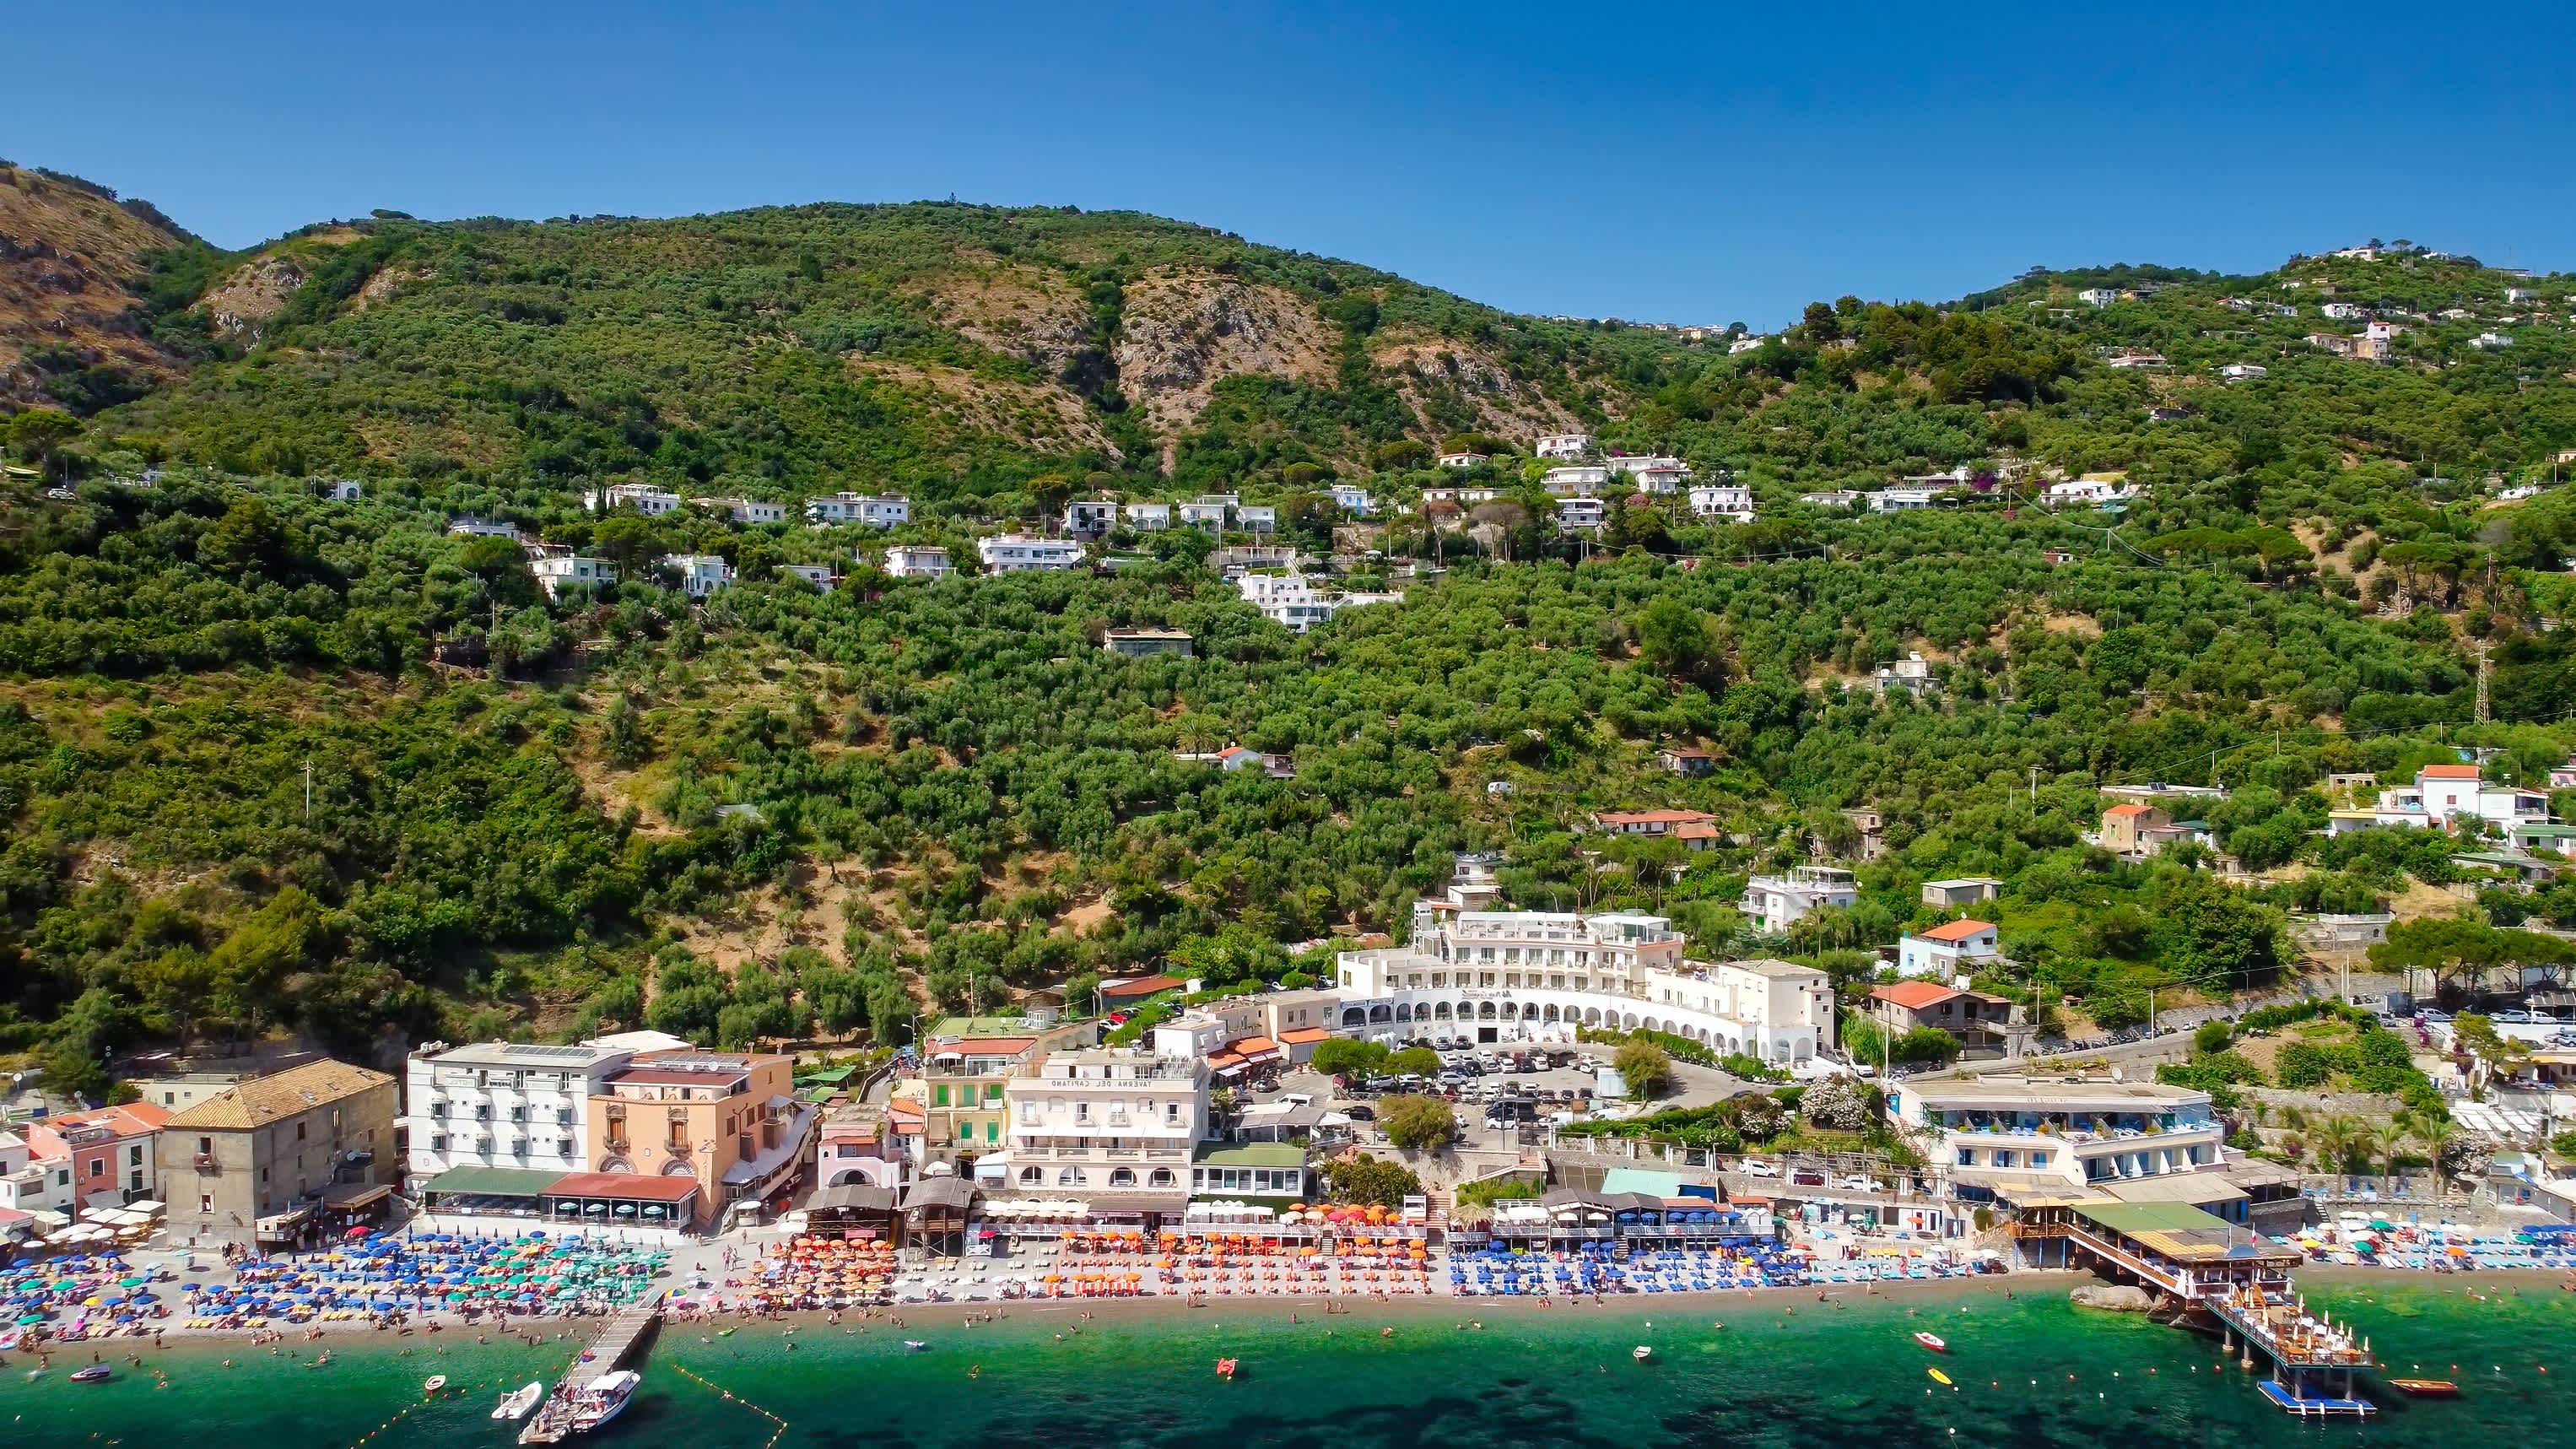 Vue aérienne de la plage Marina di Cantone avec les collines verdoyantes en arrière-plan, sur la côte Amalfitaine, en Italie. 